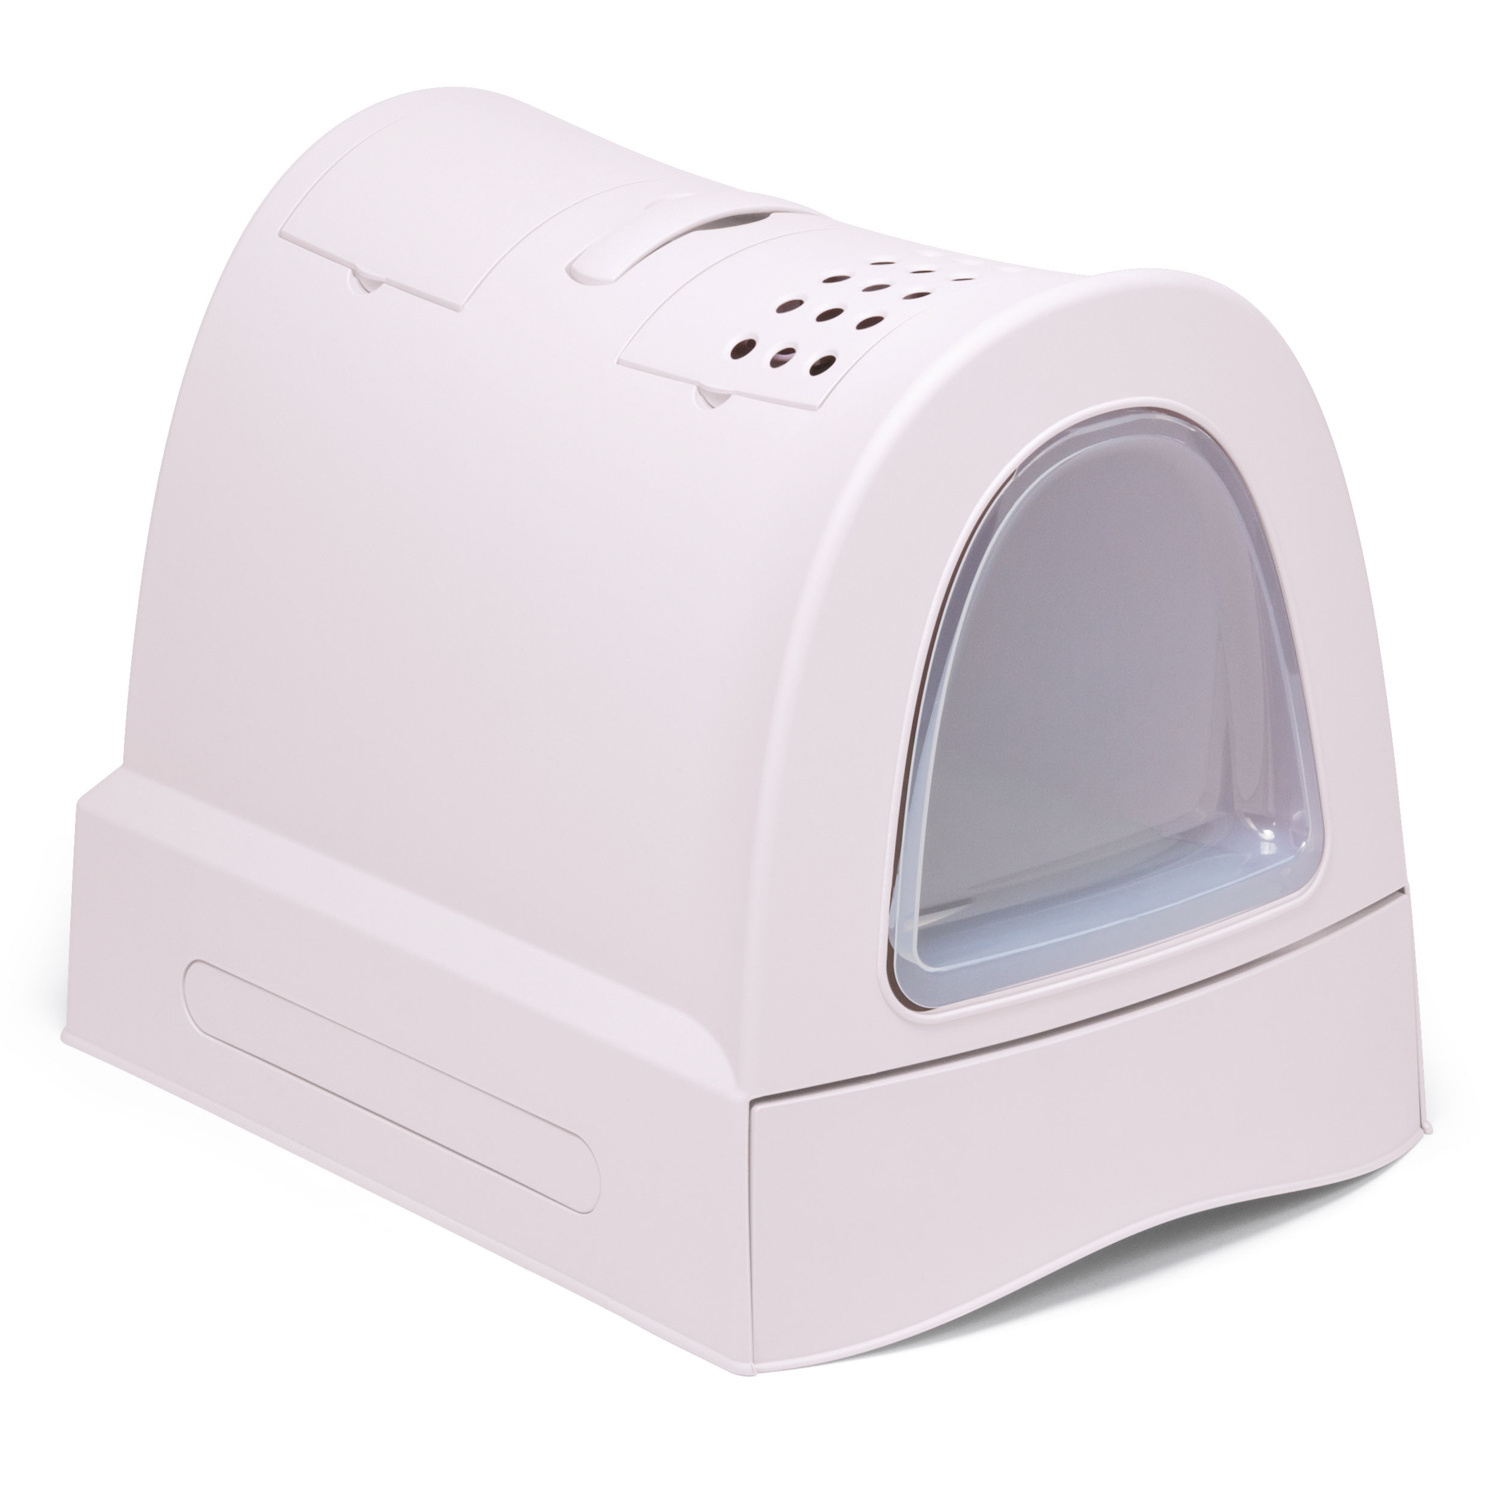 IMAC IMAC био-туалет для кошек, пепельно-розовый (2,77 кг) цена и фото